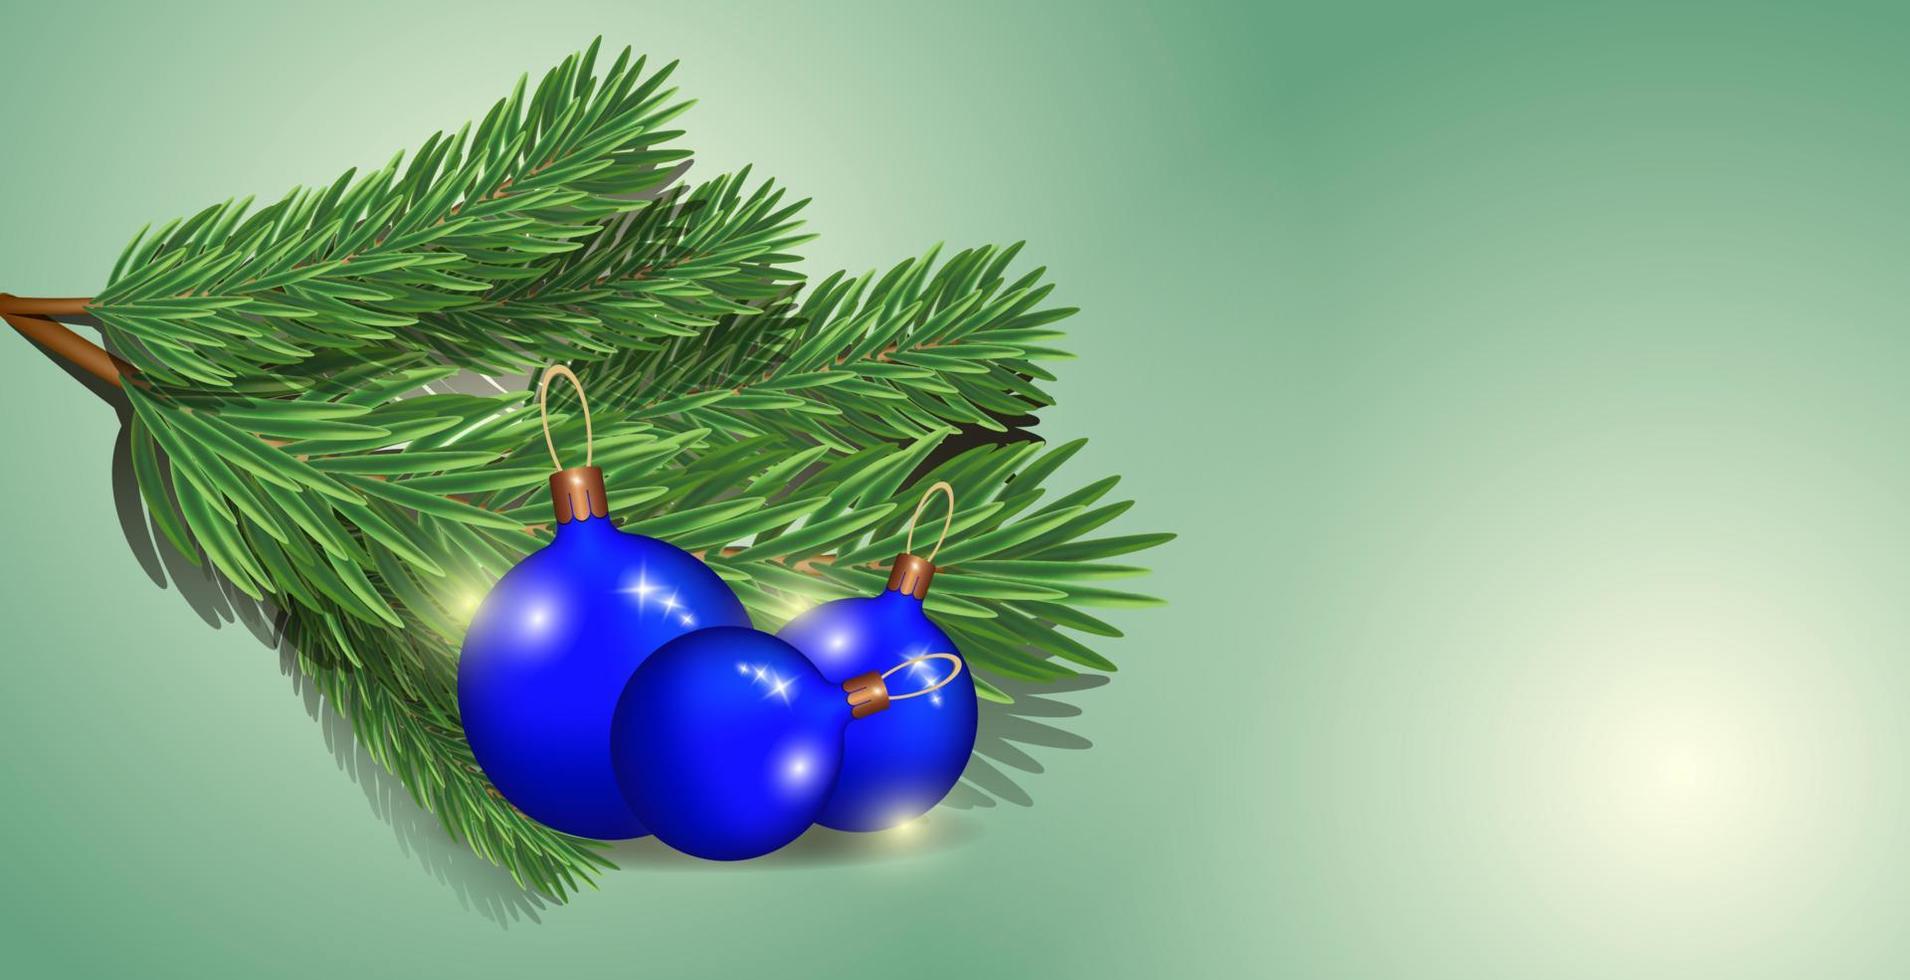 ein tannenzweig mit blauen weihnachtskugeln auf einem isolierten hintergrund. vorlage für text, designelemente, kopierorte, postkarten, soziale netzwerke, cover, banner. neujahr und weihnachten. vektor